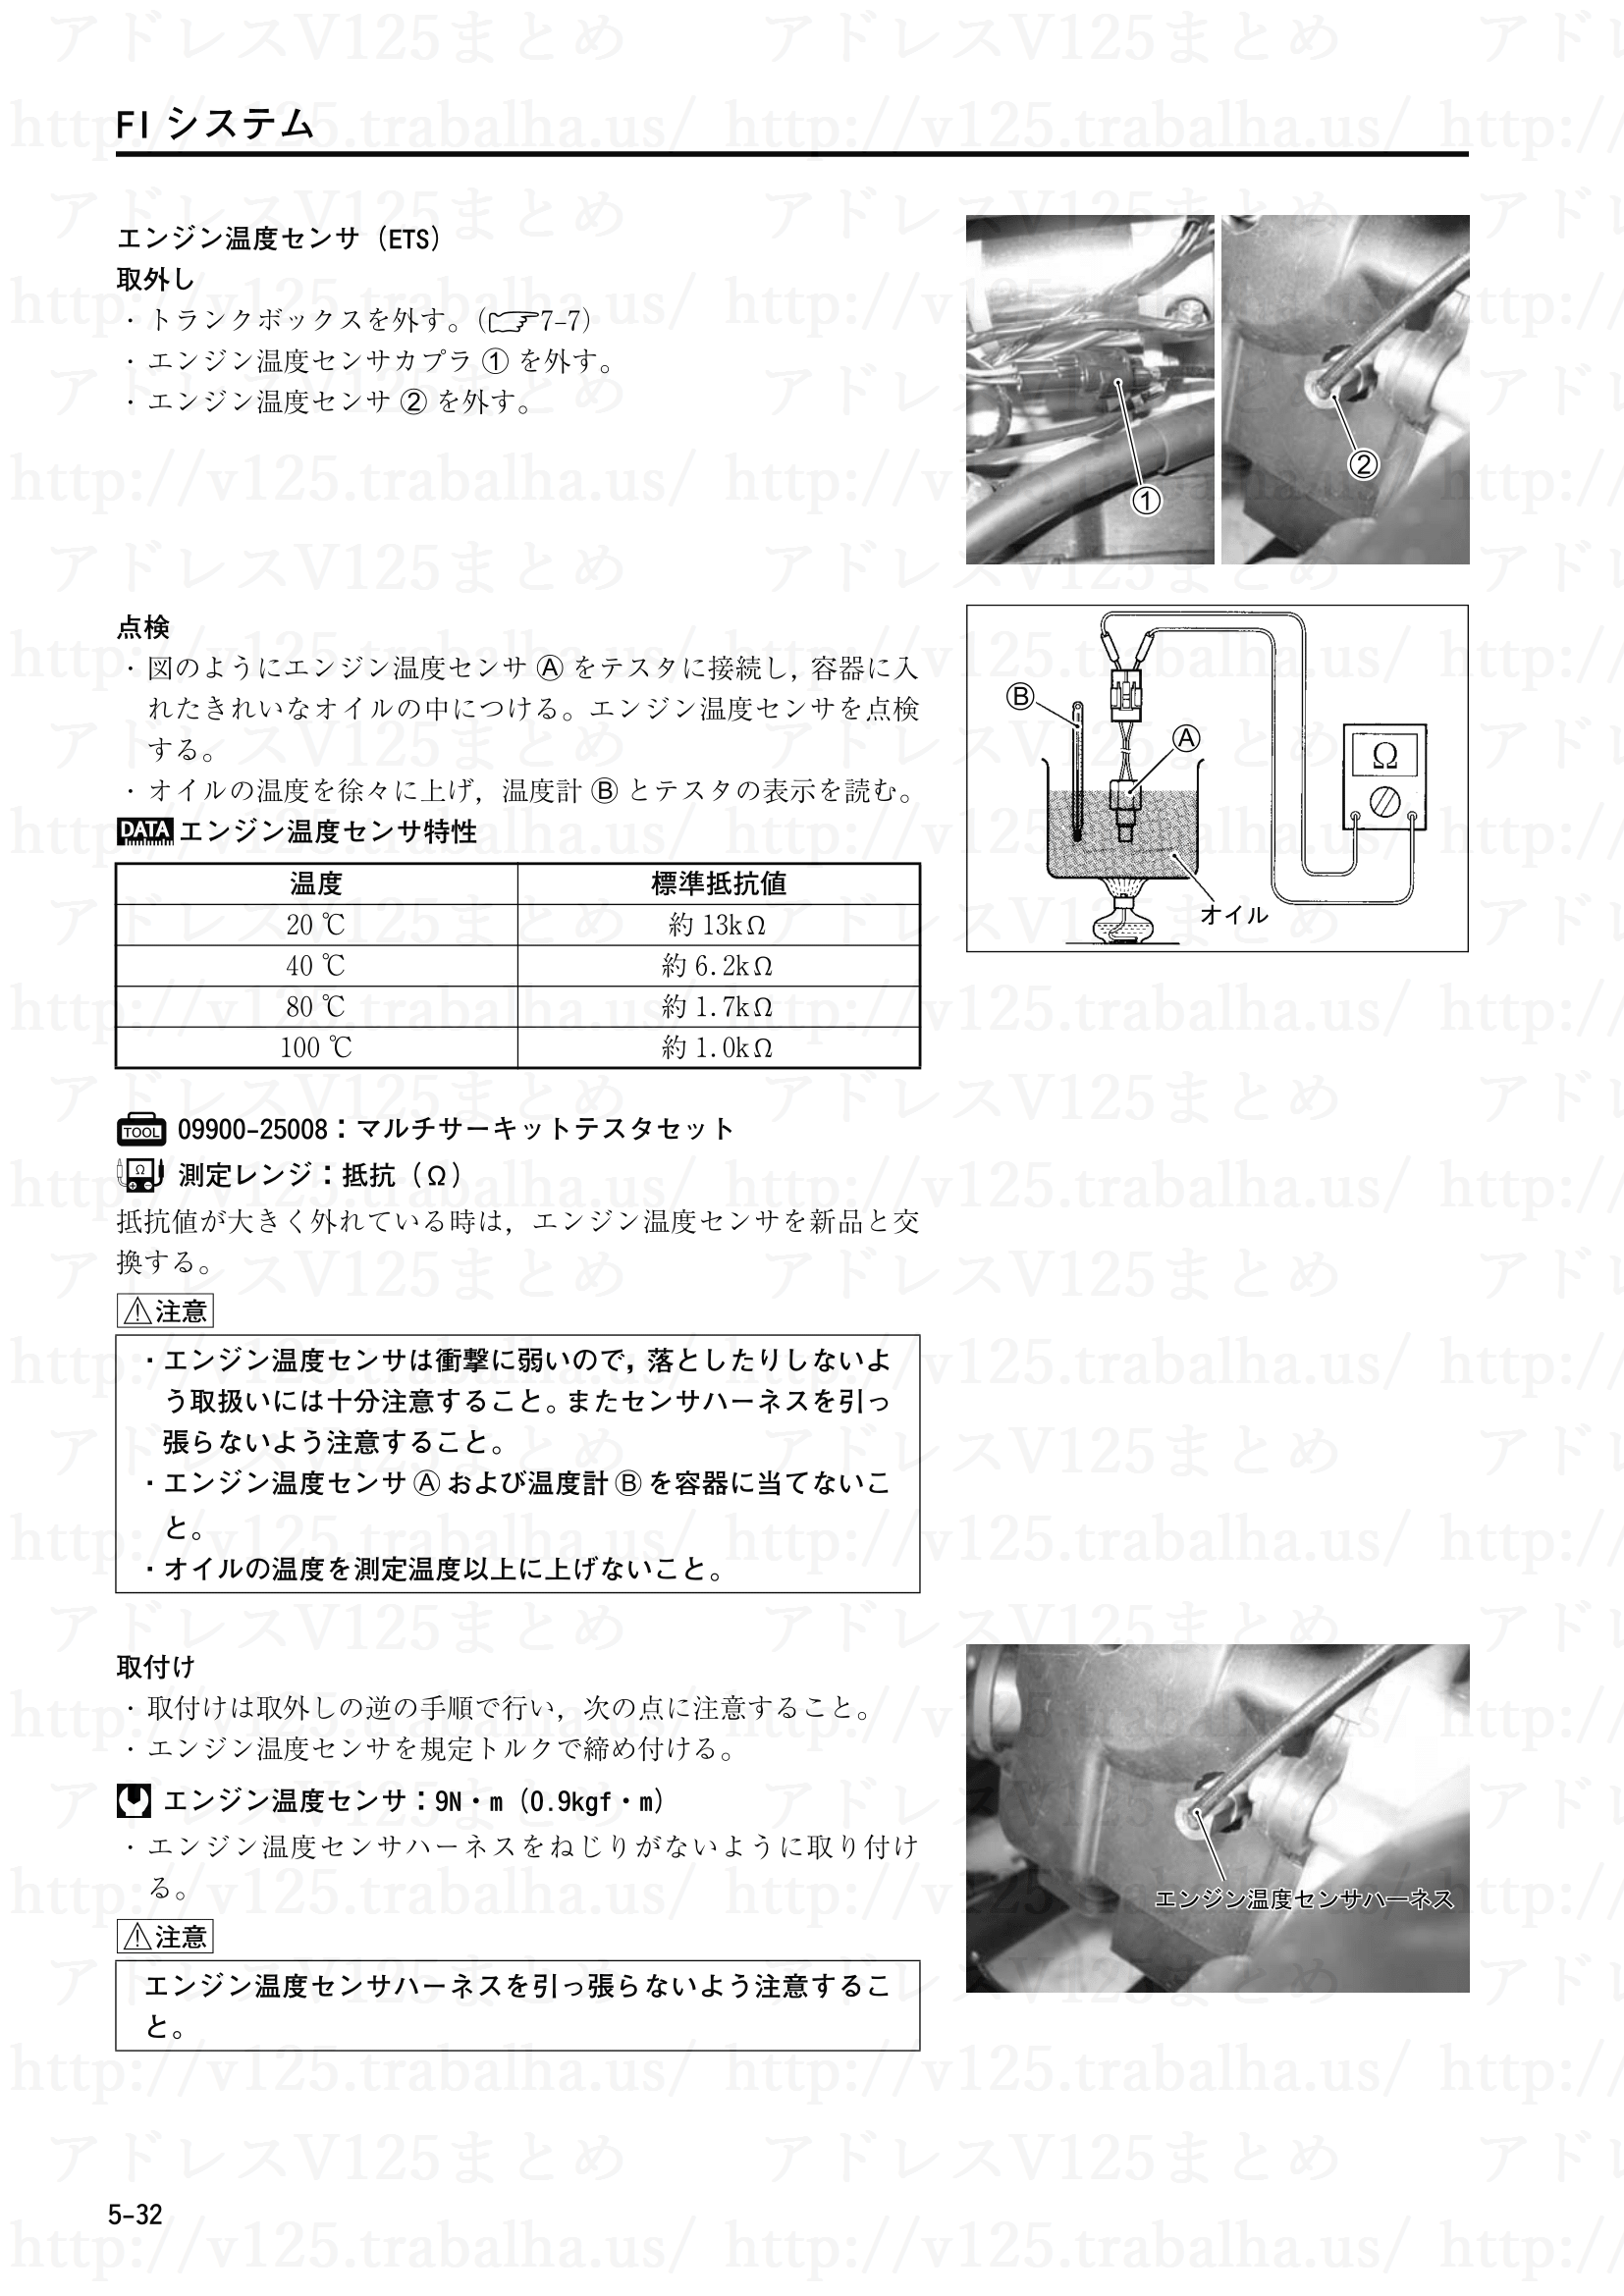 5-32【FIシステム】“C15”エンジン温度センサ(ETS)回路の故障3